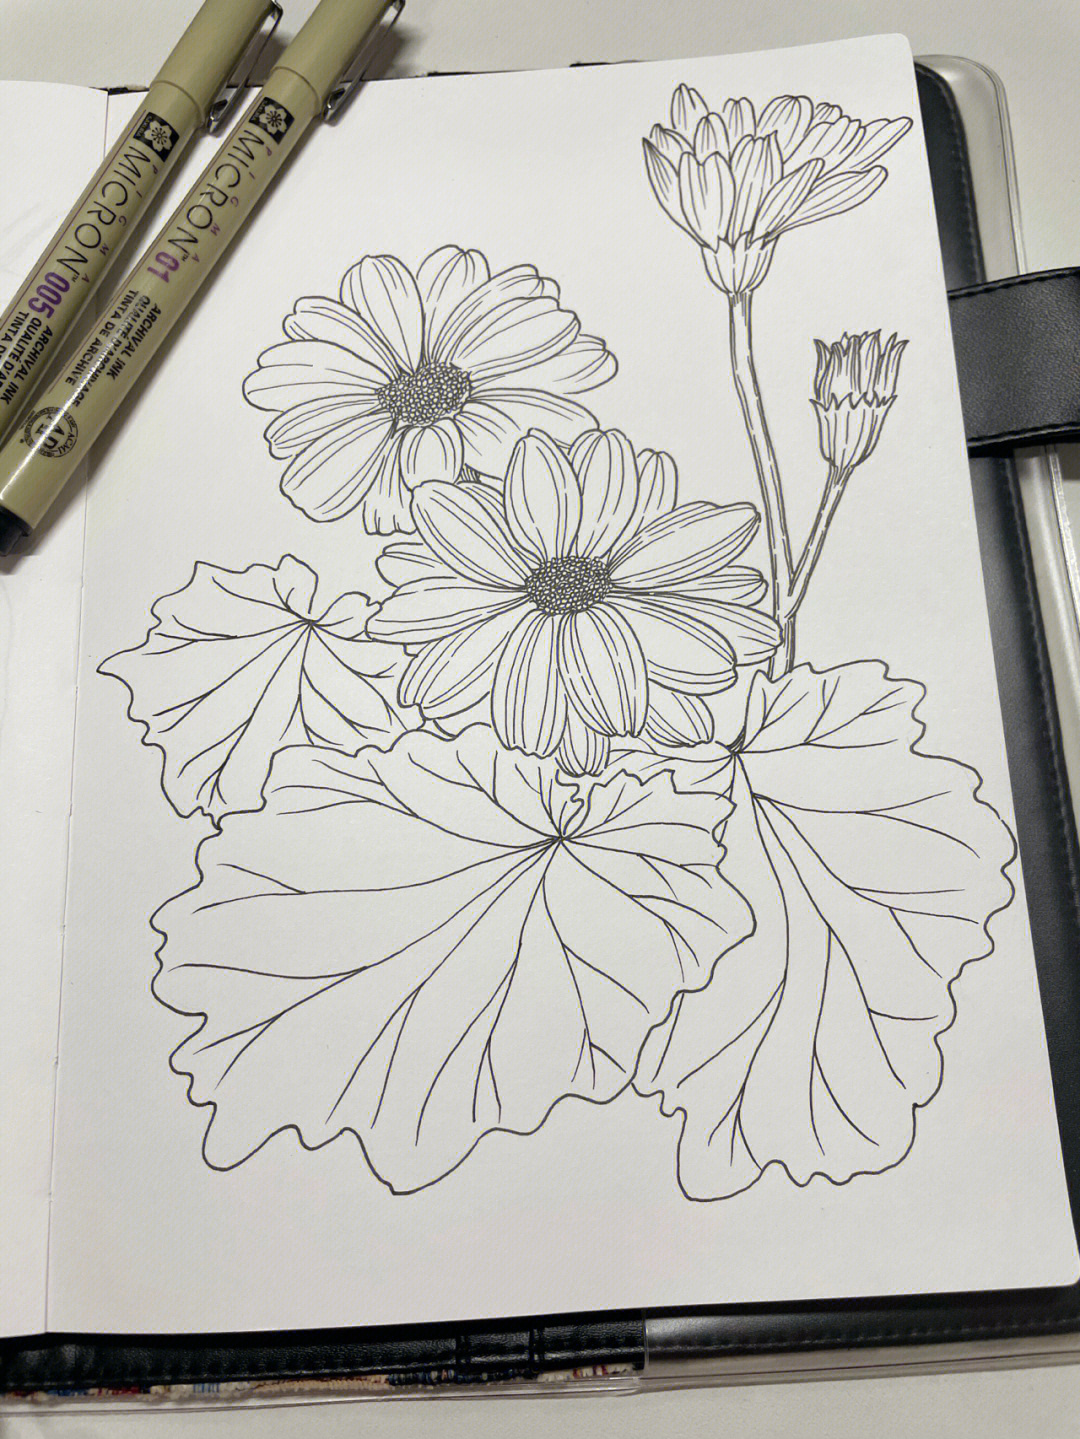 针管笔手绘花卉临摹瓜叶菊附过程